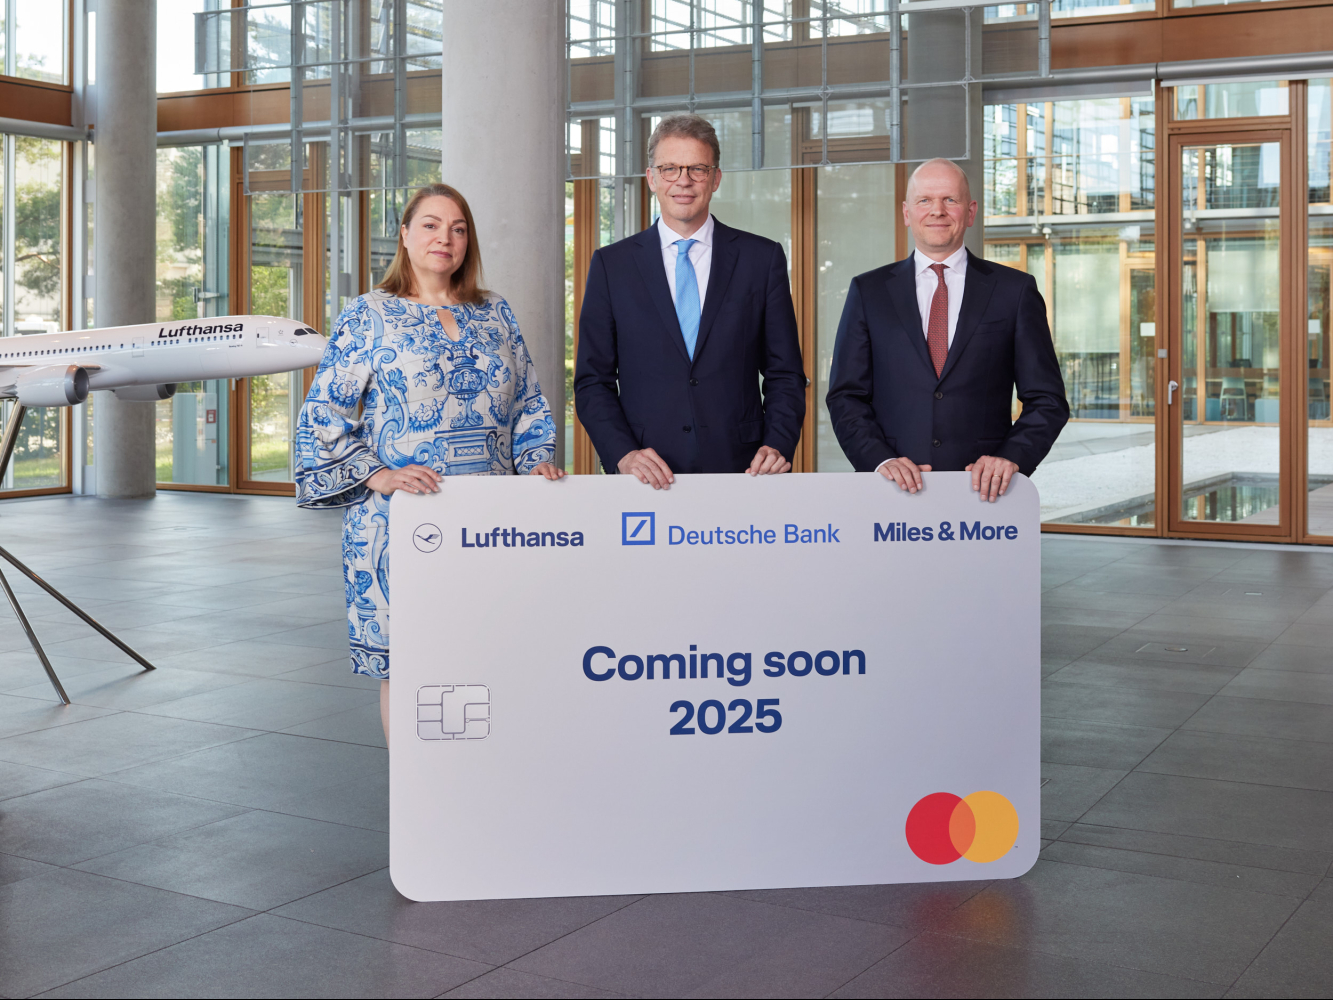 Sie hat sich in der weltweiten Ausschreibung durchgesetzt: Die Deutsche Bank wird ab Sommer 2025 die „Miles & More“-Kreditkarte der Lufthansa herausgeben.